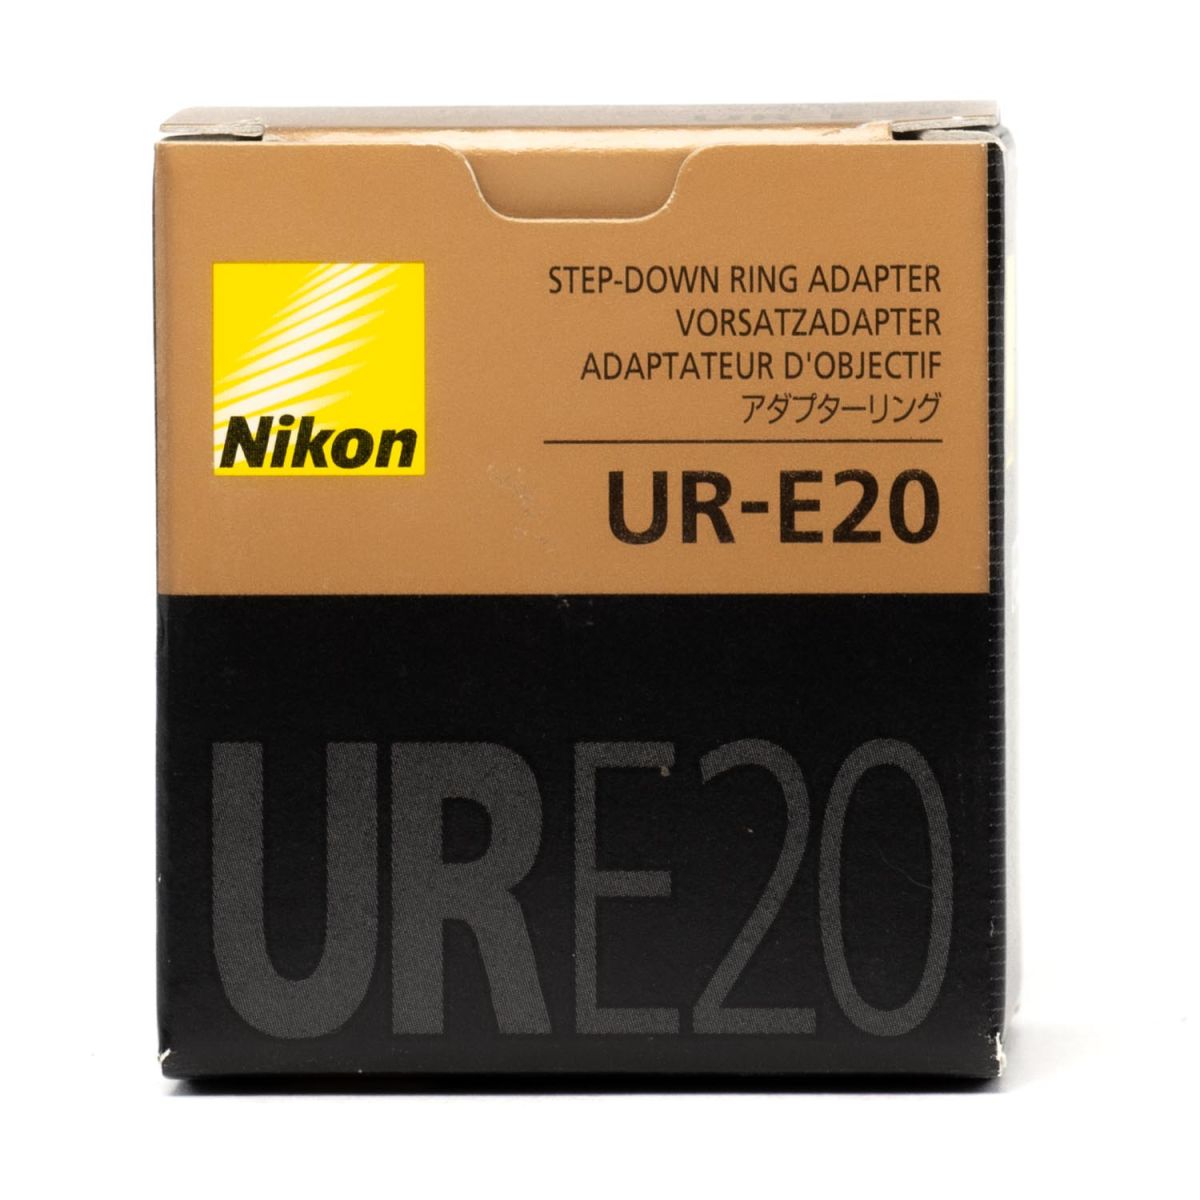 Nikon Ste-Down Ring Adapter UR-E20 *new!*